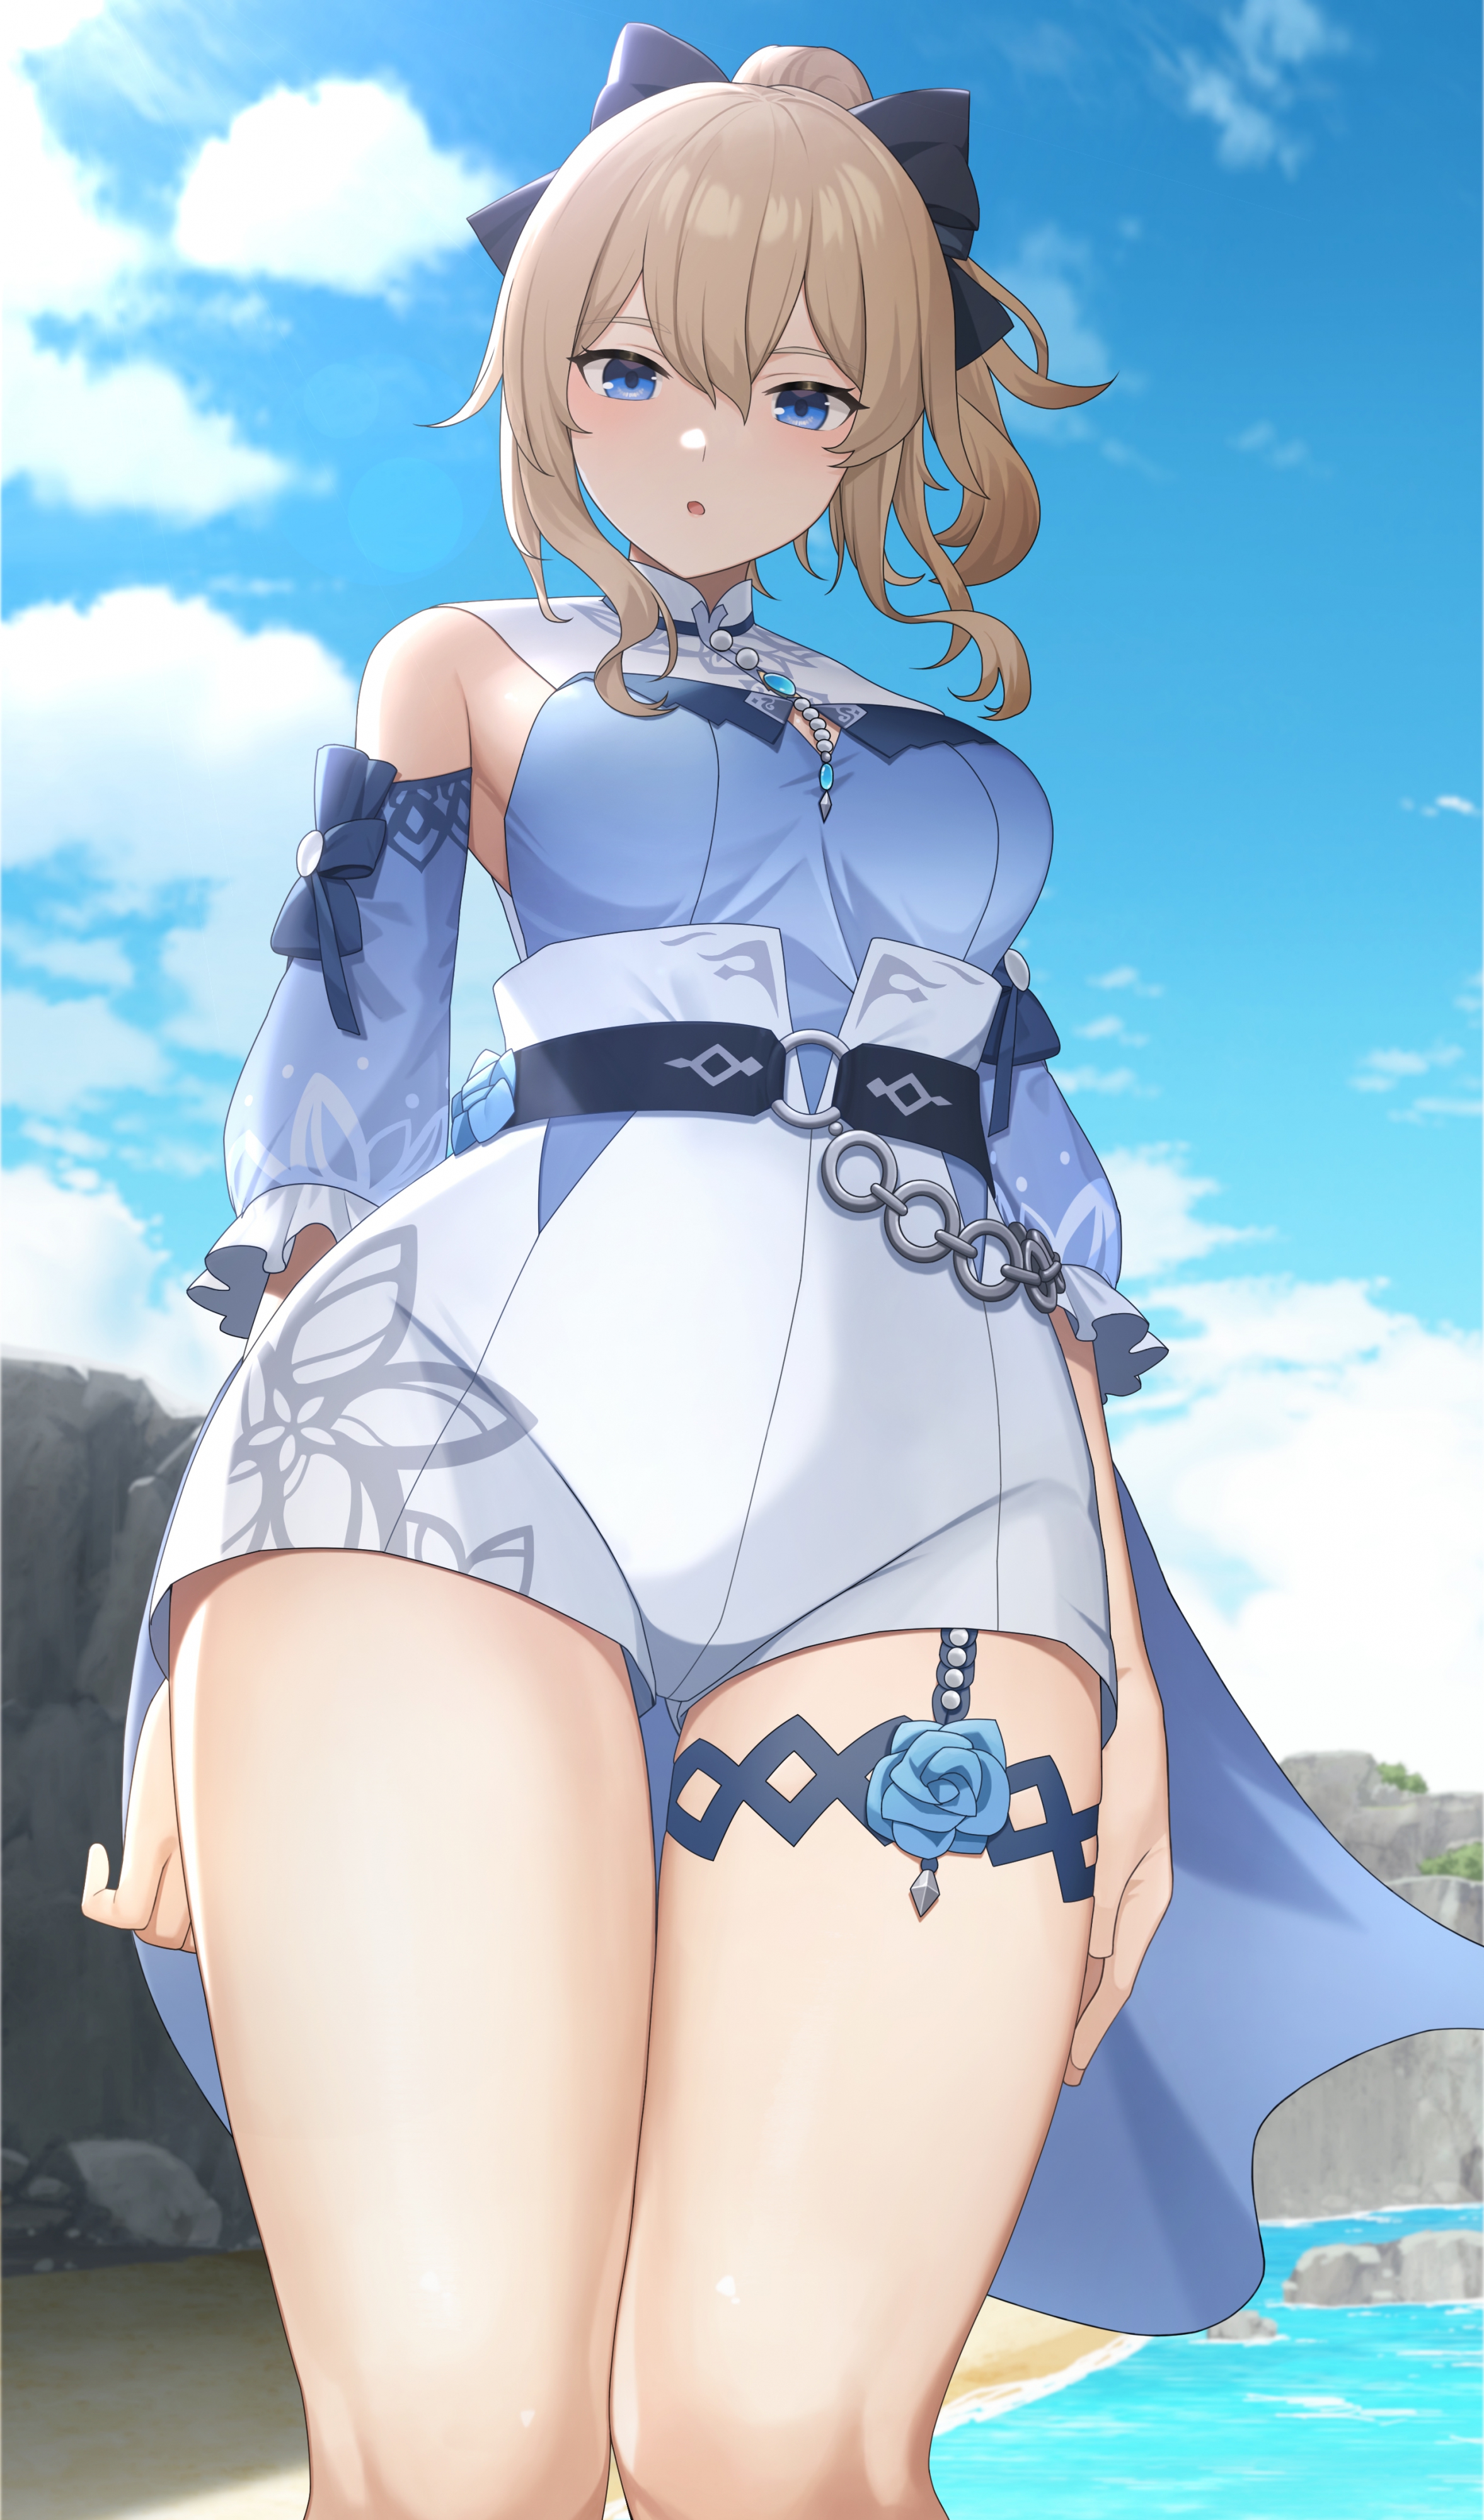 Anime Anime Girls Sakamotono Artwork Genshin Impact Jean Genshin Impact Blonde Blue Eyes 2355x4000